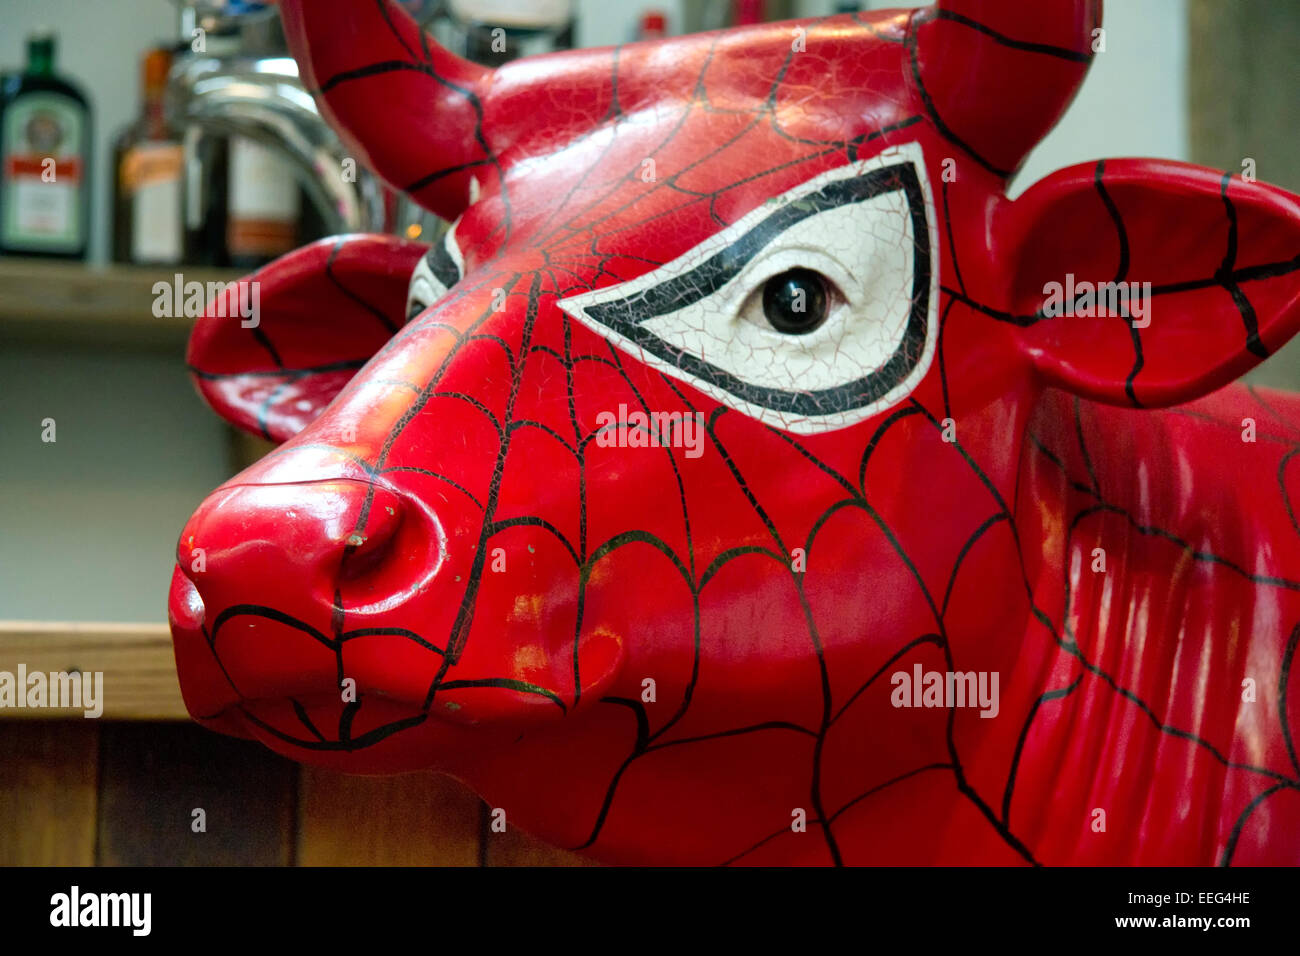 La statua di una mucca in livrea Spiderman, Jimmy's Farm, Ipswich, Suffolk, Regno Unito Foto Stock